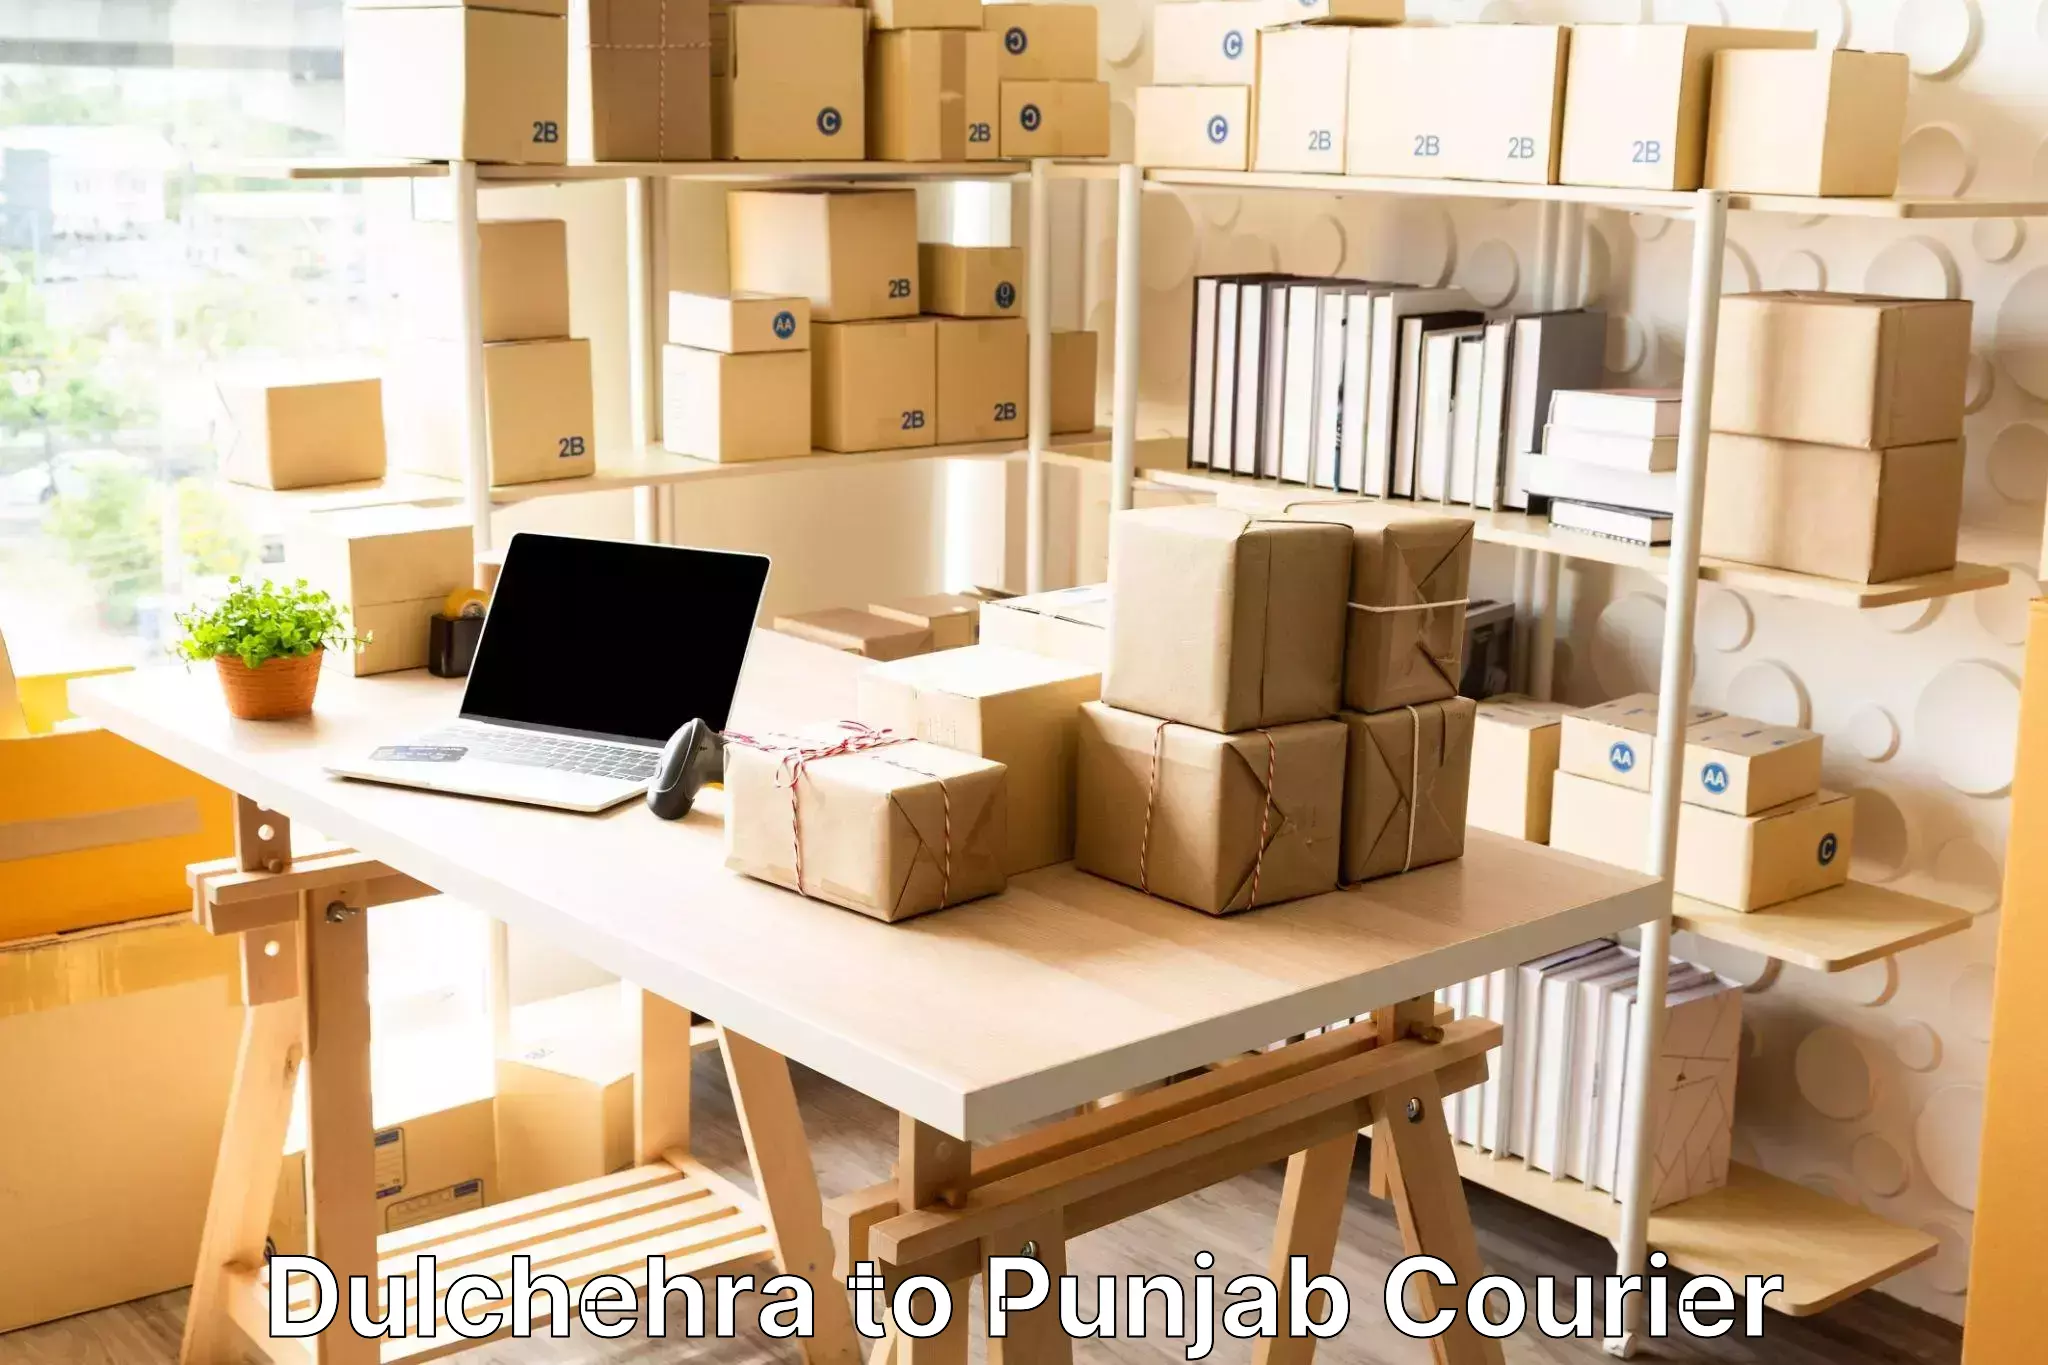 Online luggage shipping Dulchehra to Punjab